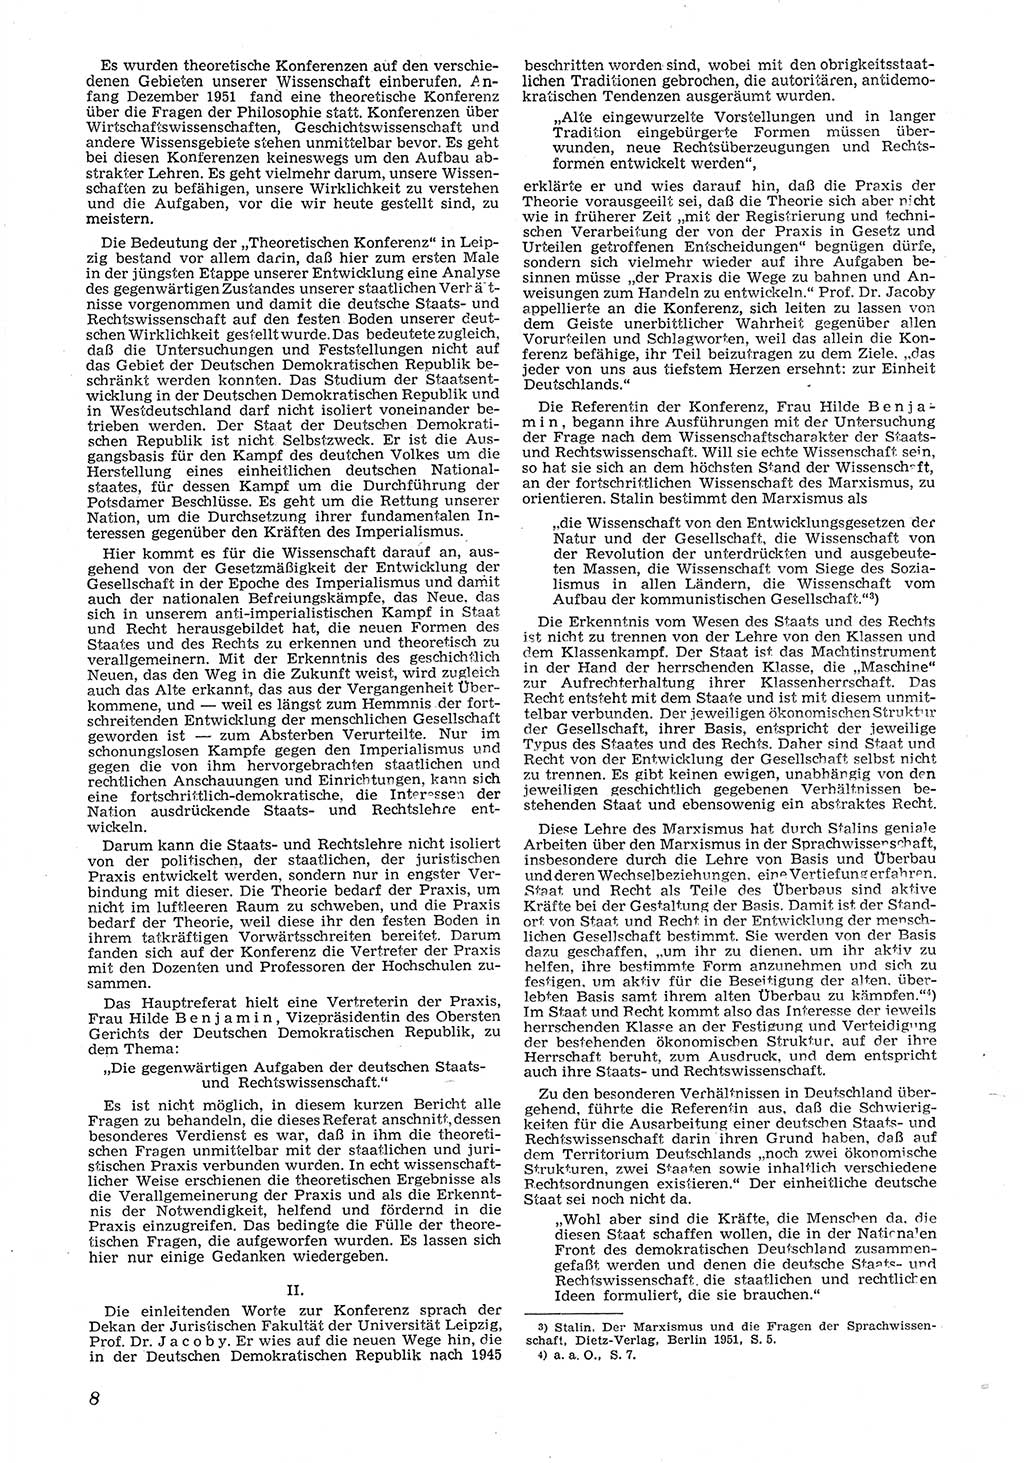 Neue Justiz (NJ), Zeitschrift für Recht und Rechtswissenschaft [Deutsche Demokratische Republik (DDR)], 6. Jahrgang 1952, Seite 8 (NJ DDR 1952, S. 8)